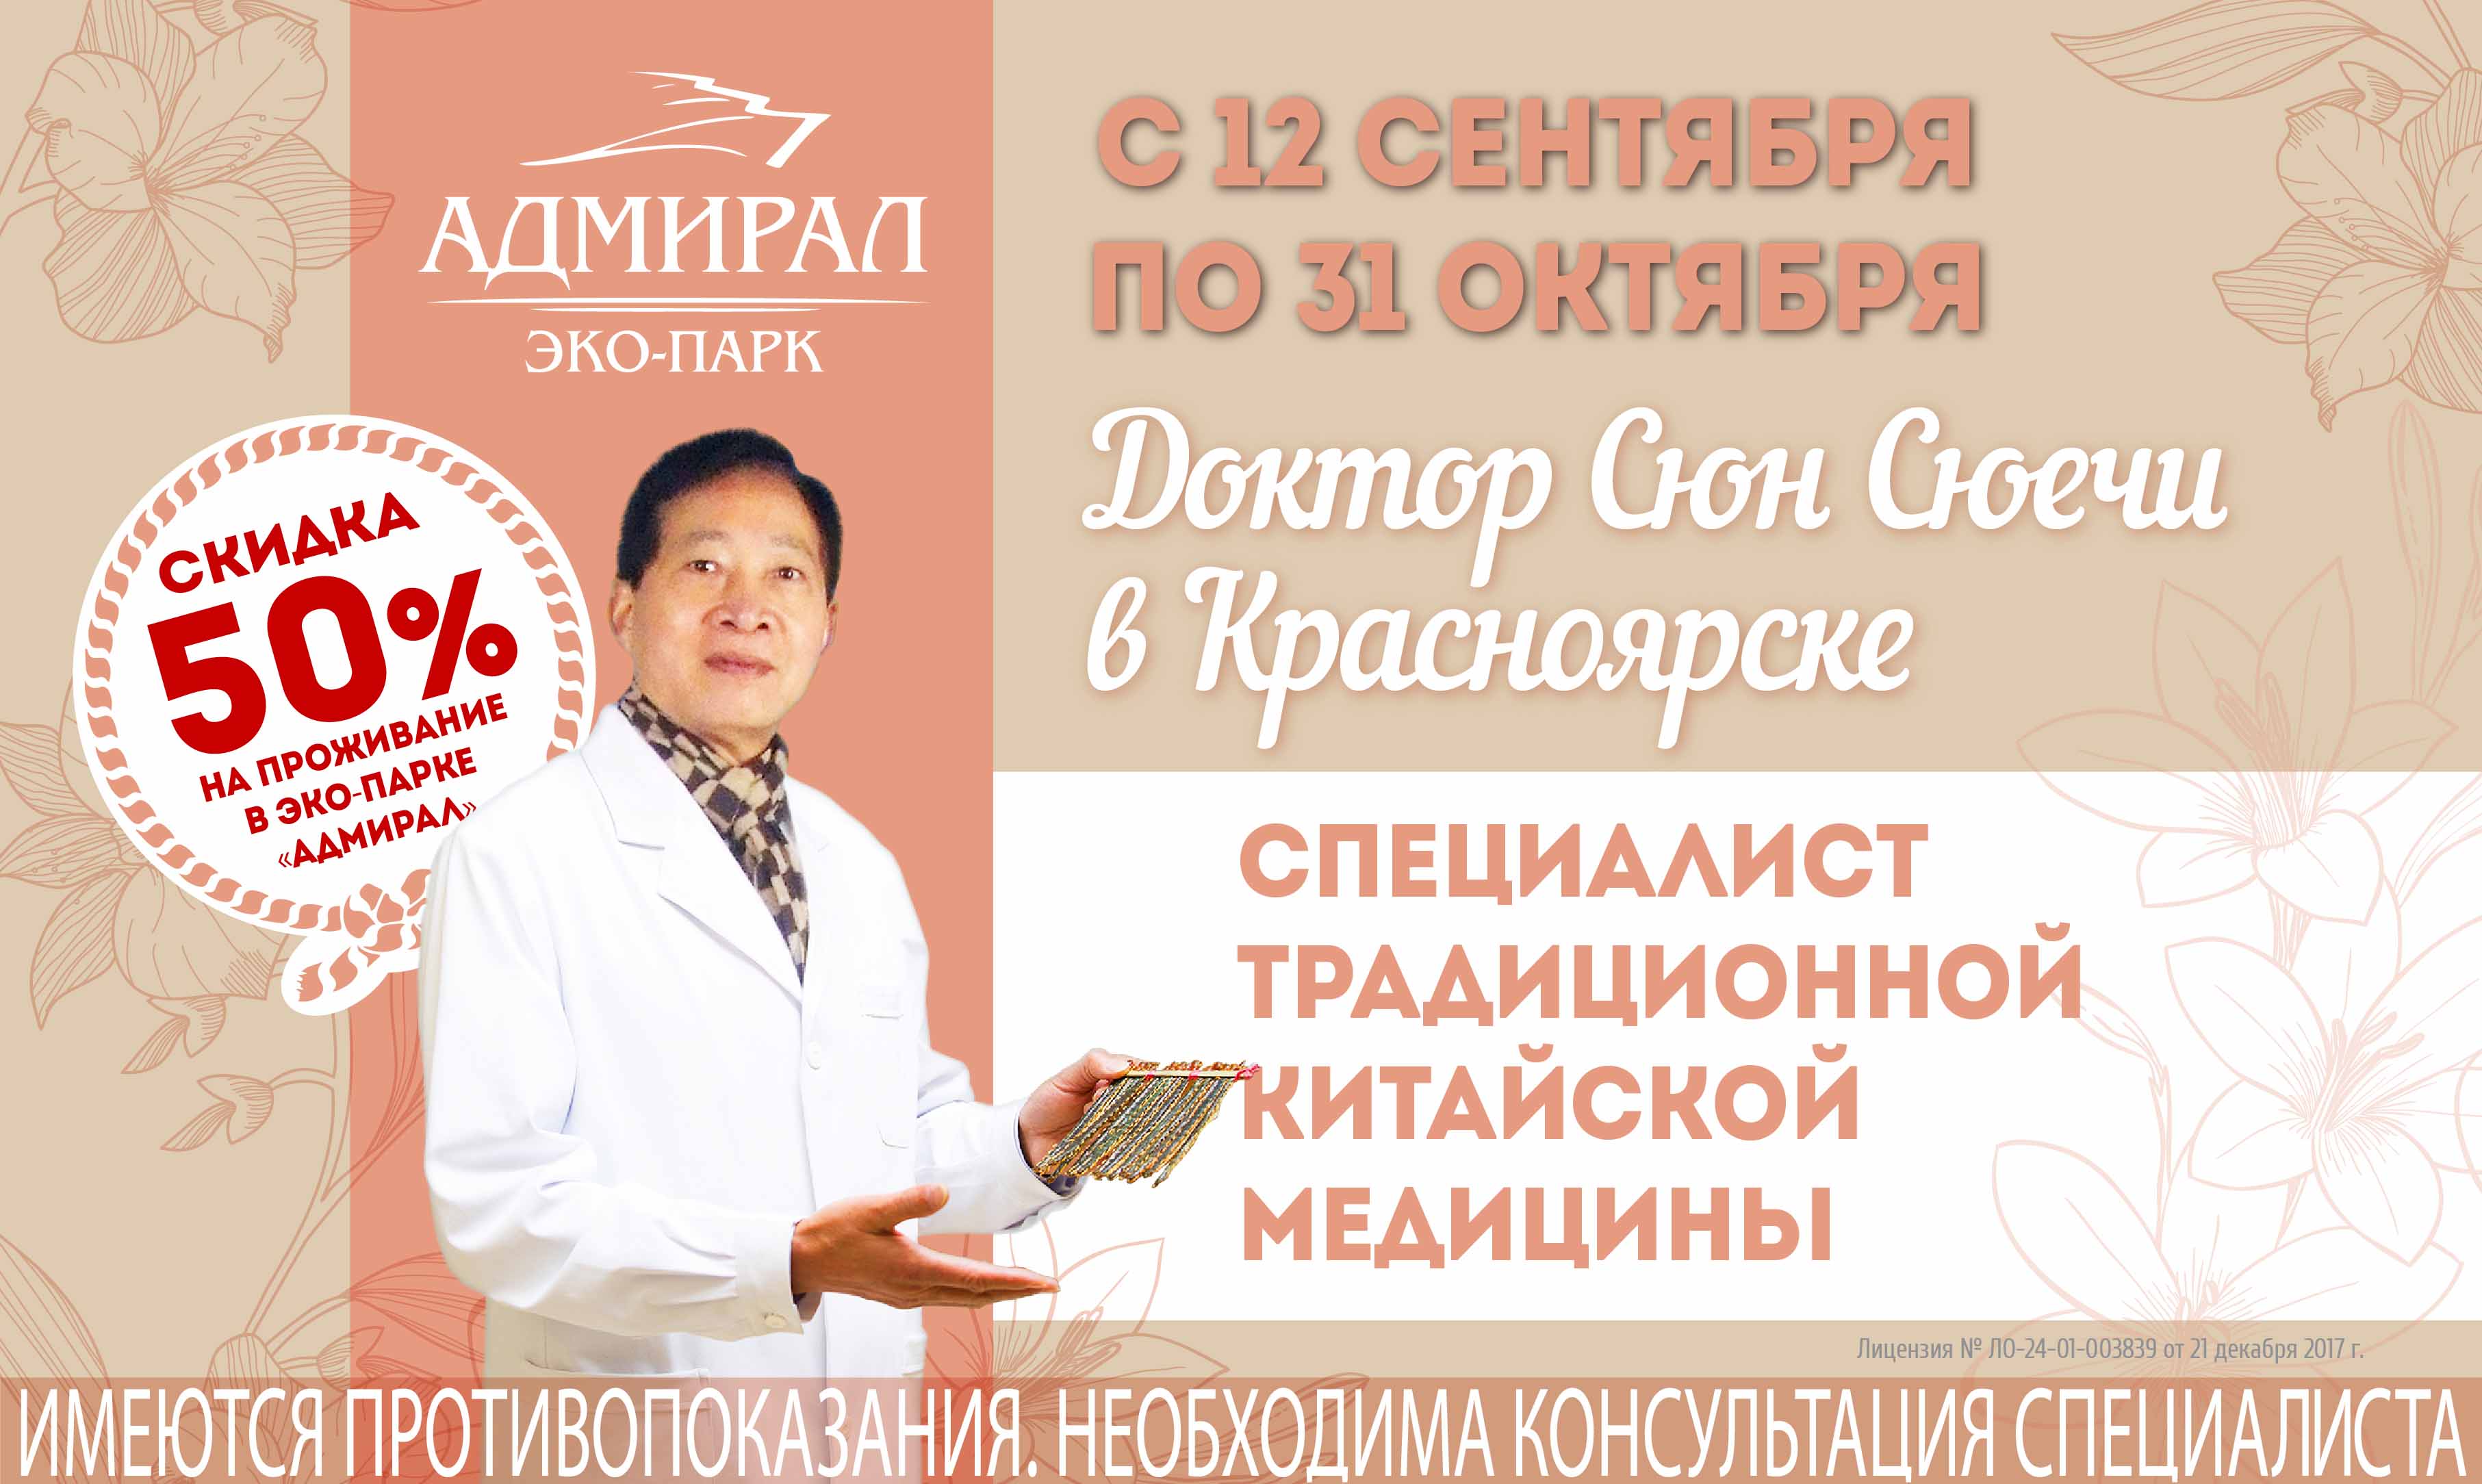 Доктор Сюн Сюечи снова в Красноярске! | Эко-Парк Адмирал